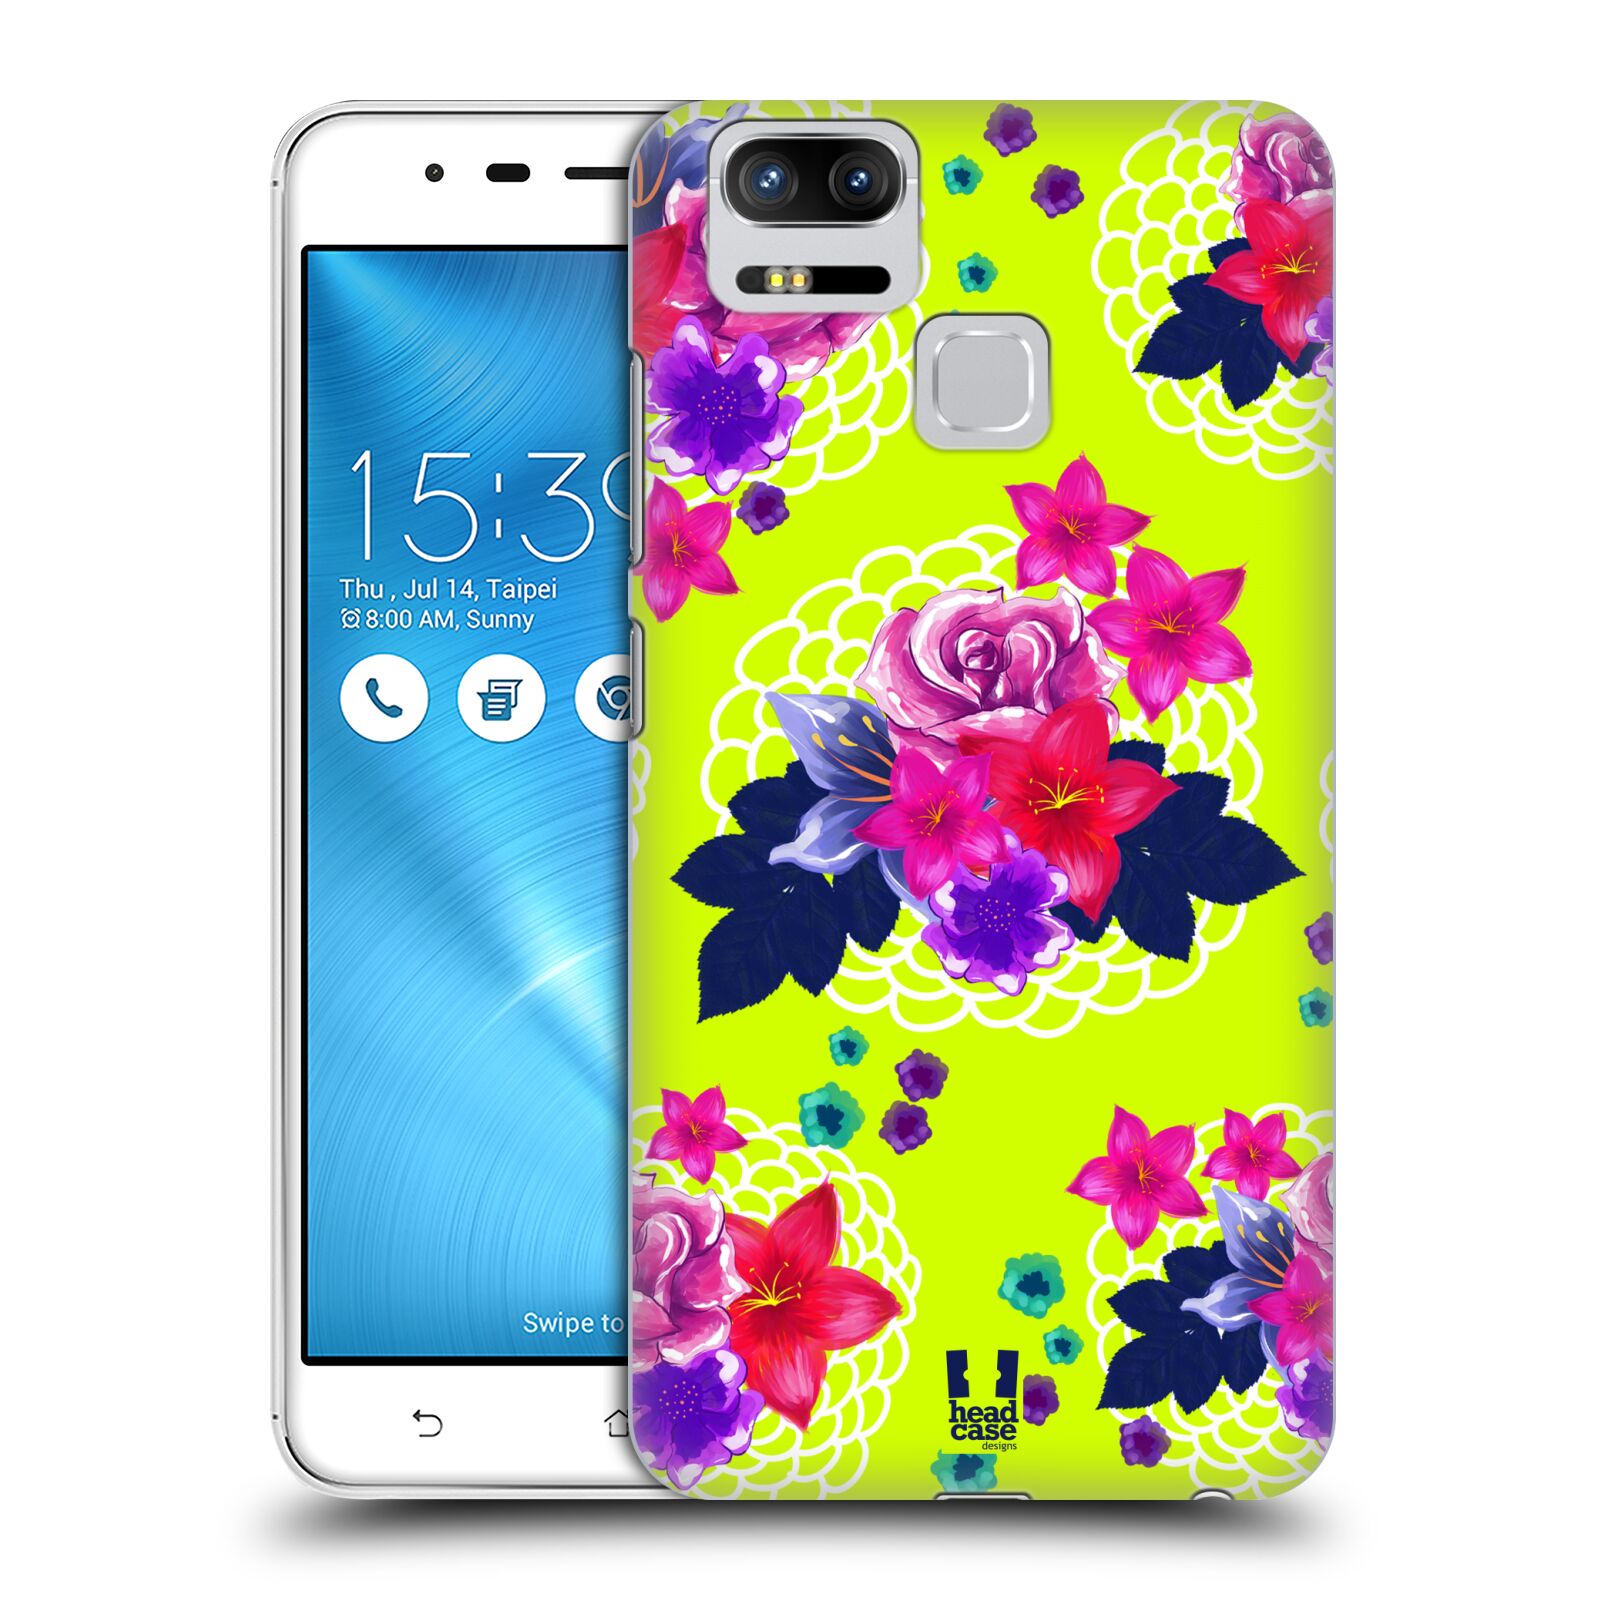 HEAD CASE plastový obal na mobil Asus Zenfone 3 Zoom ZE553KL vzor Malované květiny barevné NEON ZELENÁ